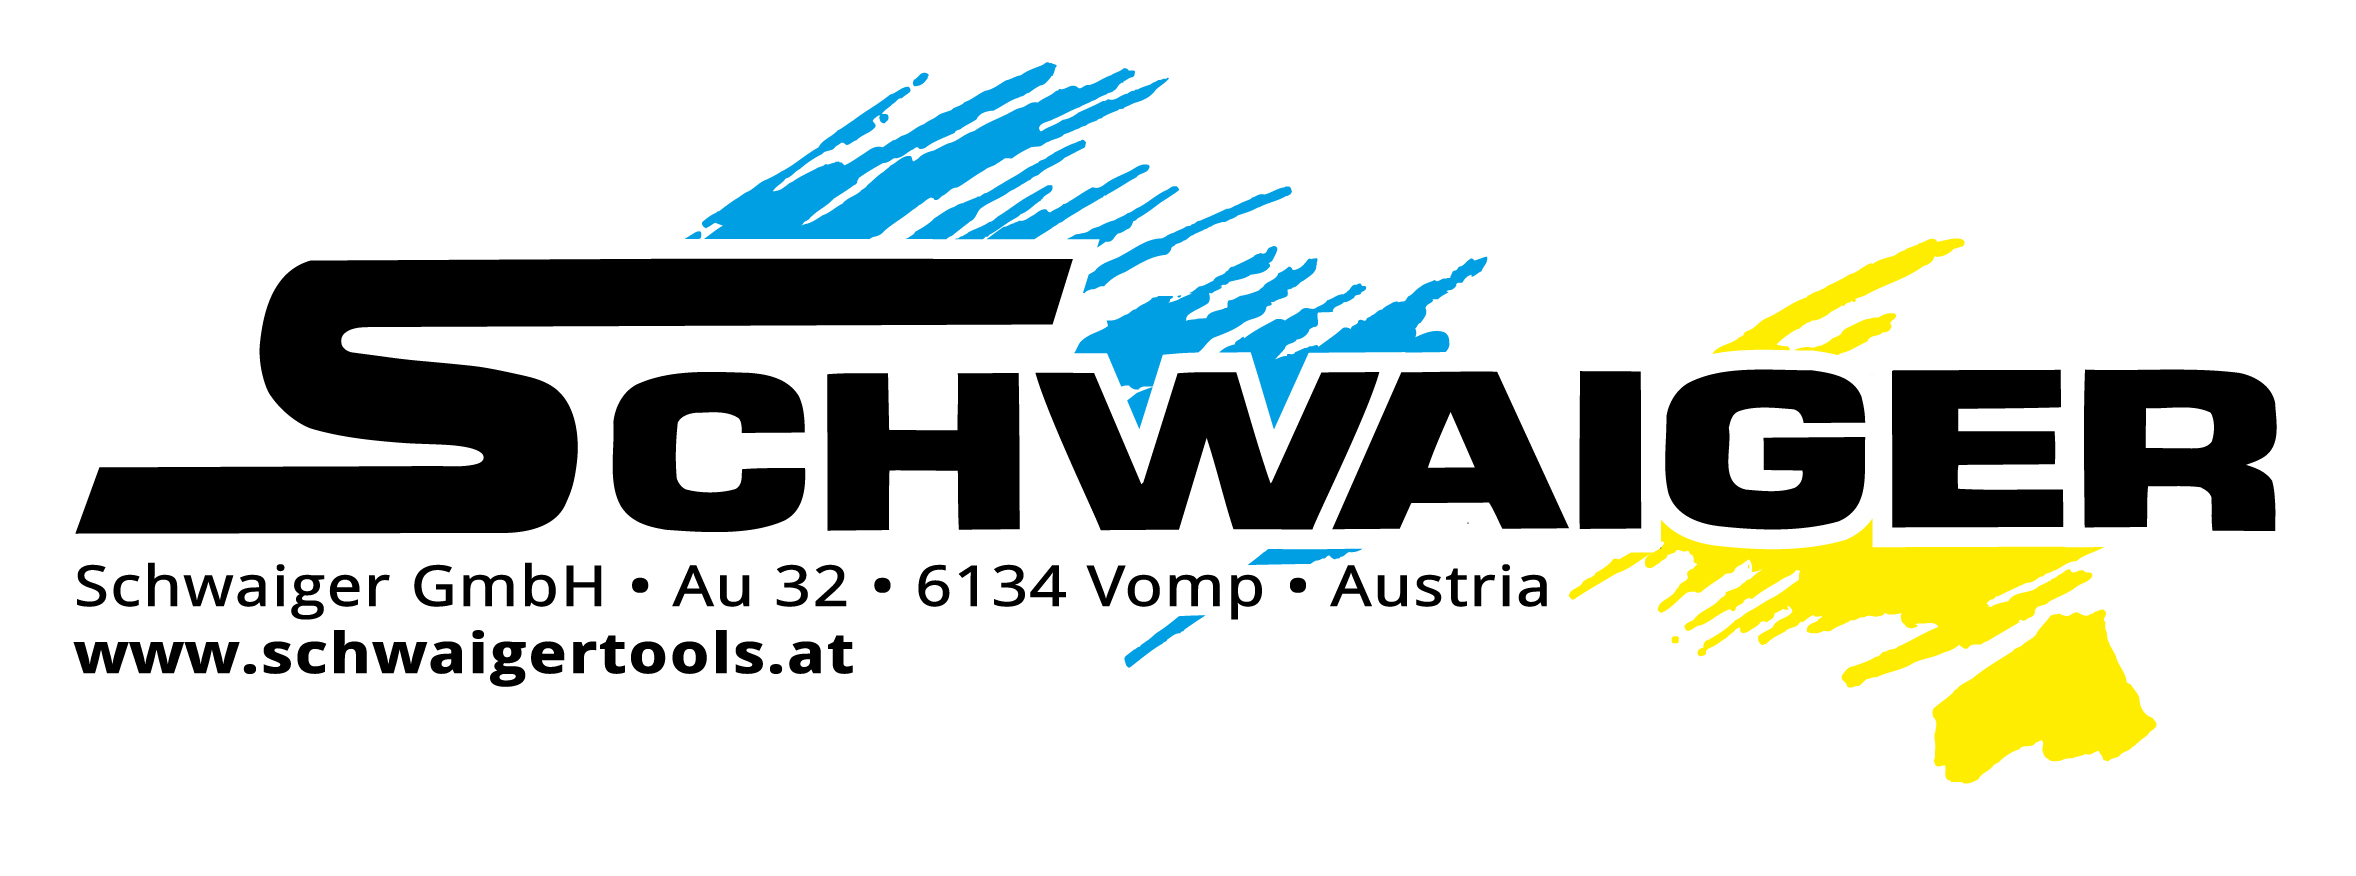 Schwaiger GmbH